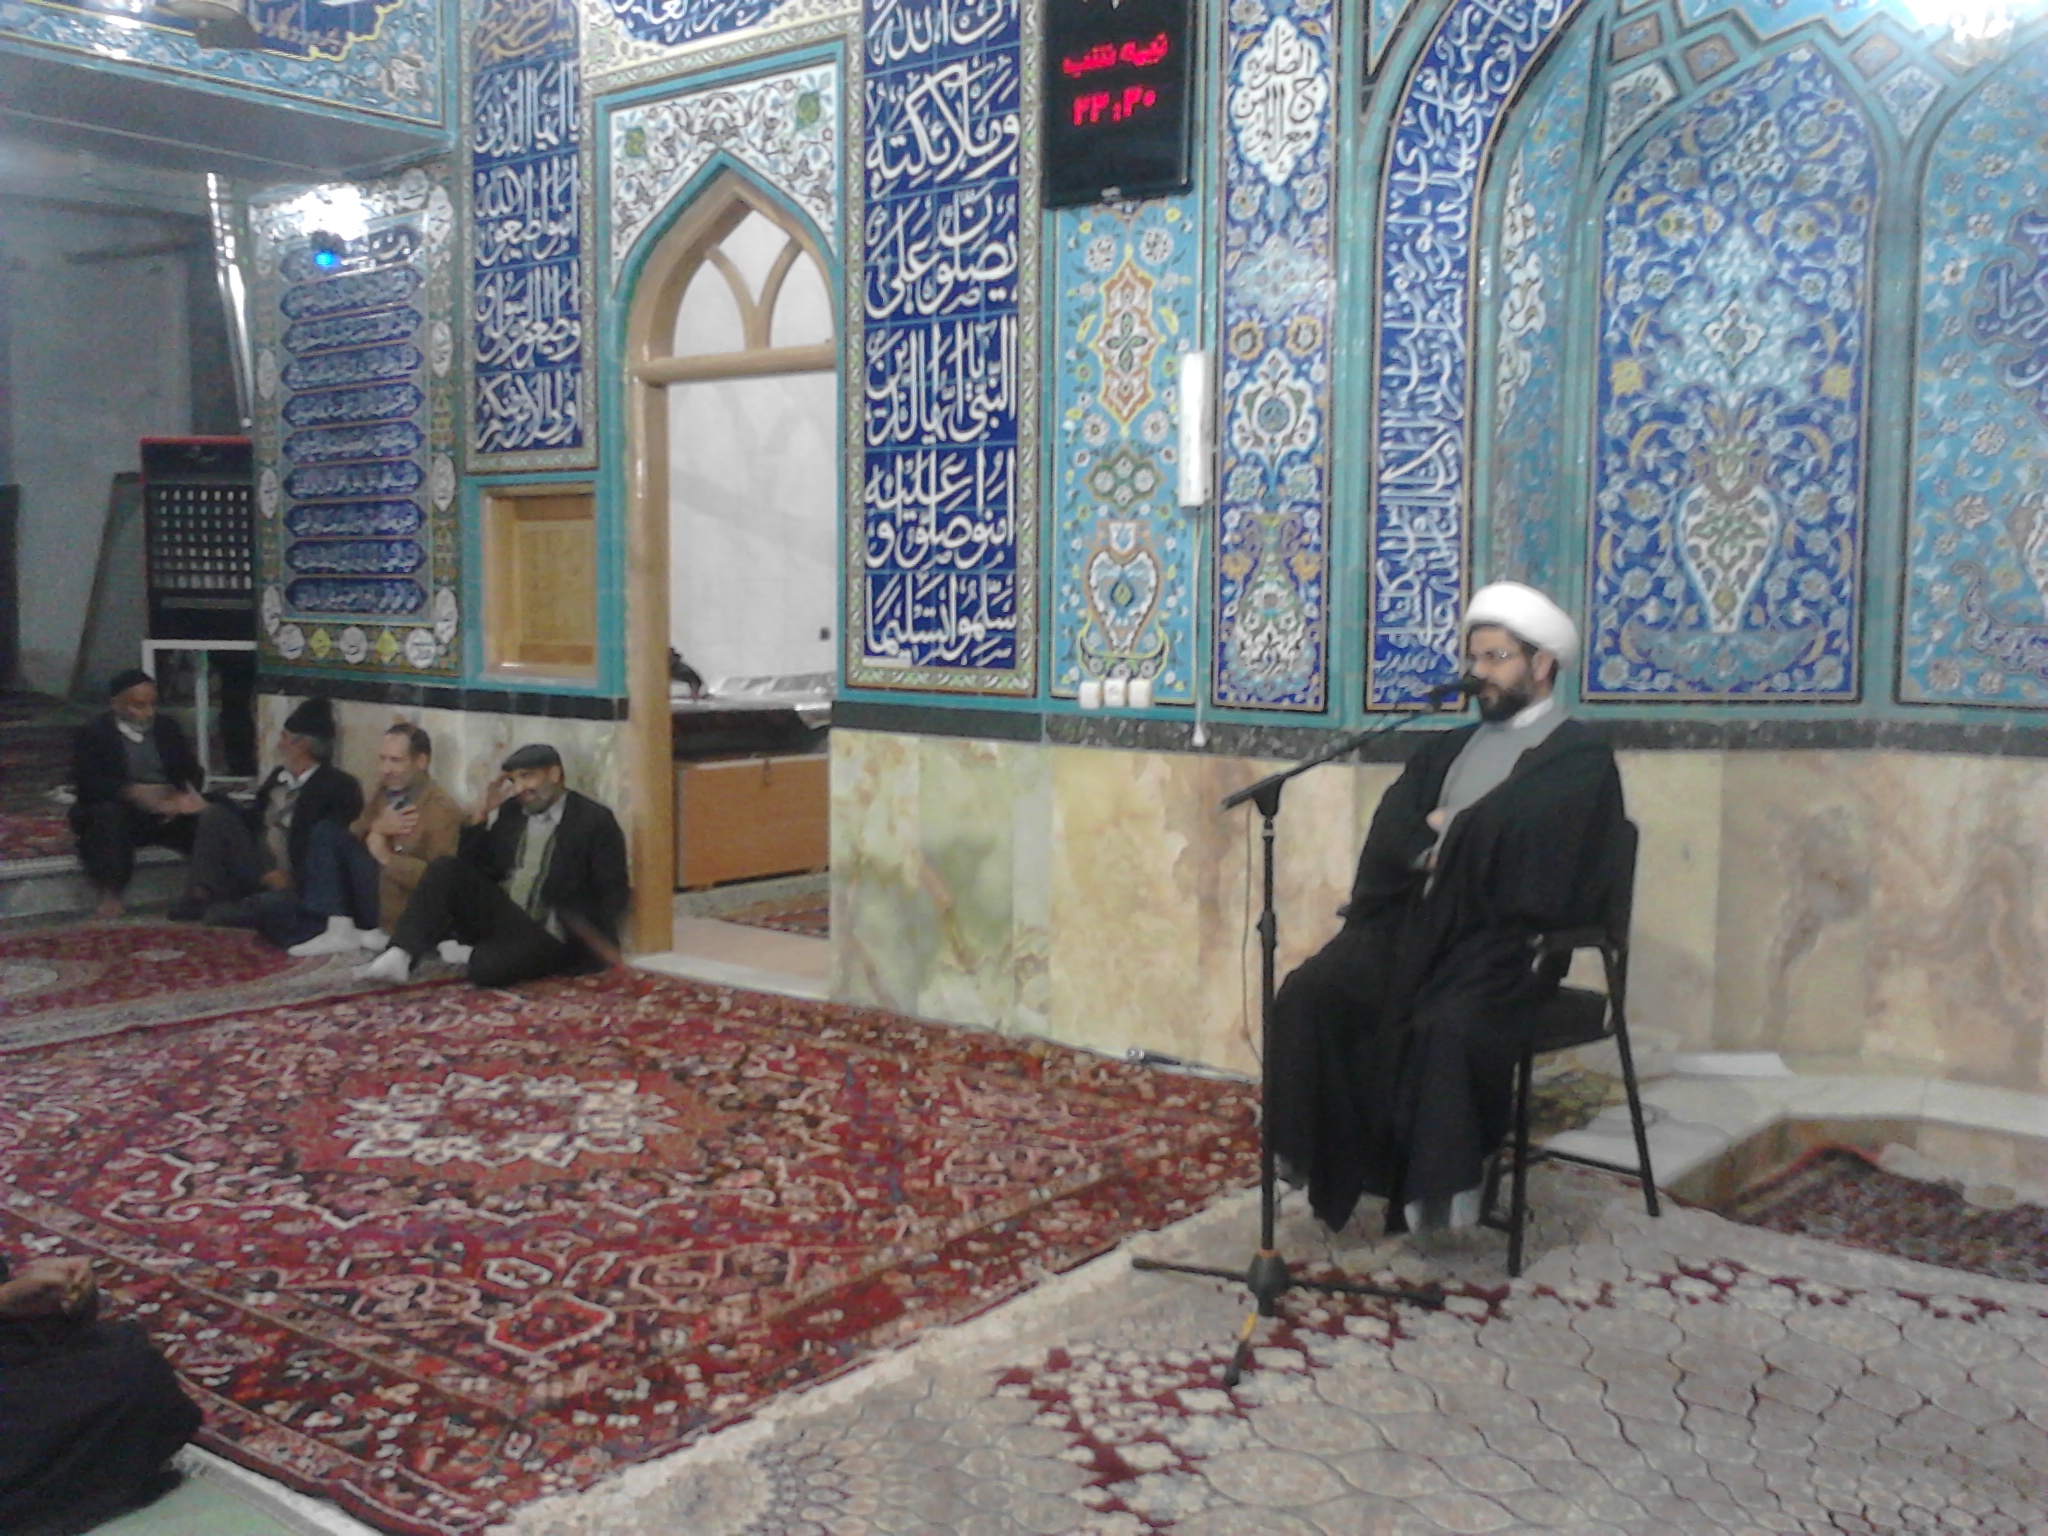 سخنرانی حاج آقا هاشمی امام جمعه محترم بخش قهدریجان در مسجد بزرگ شهر